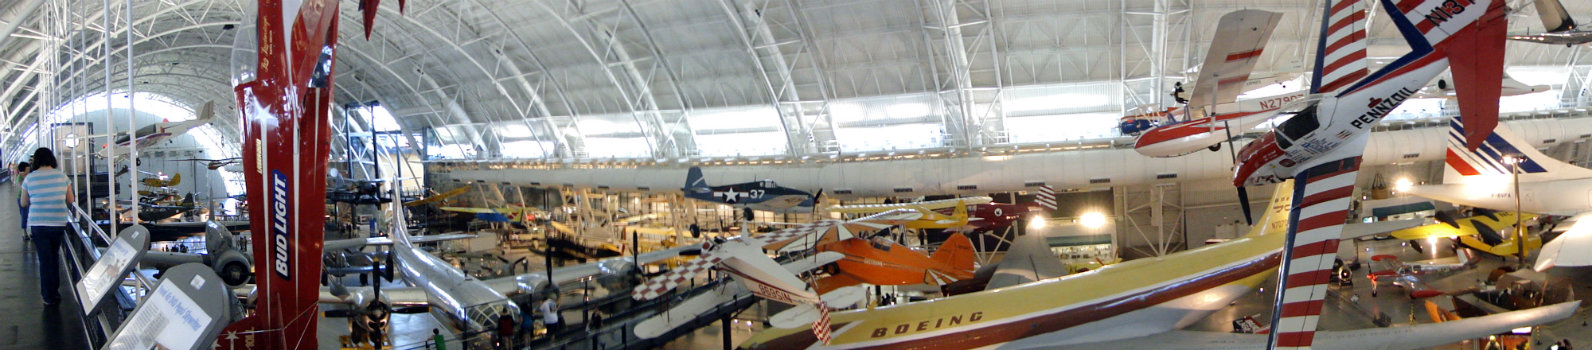 Boeing Aviation Hangar